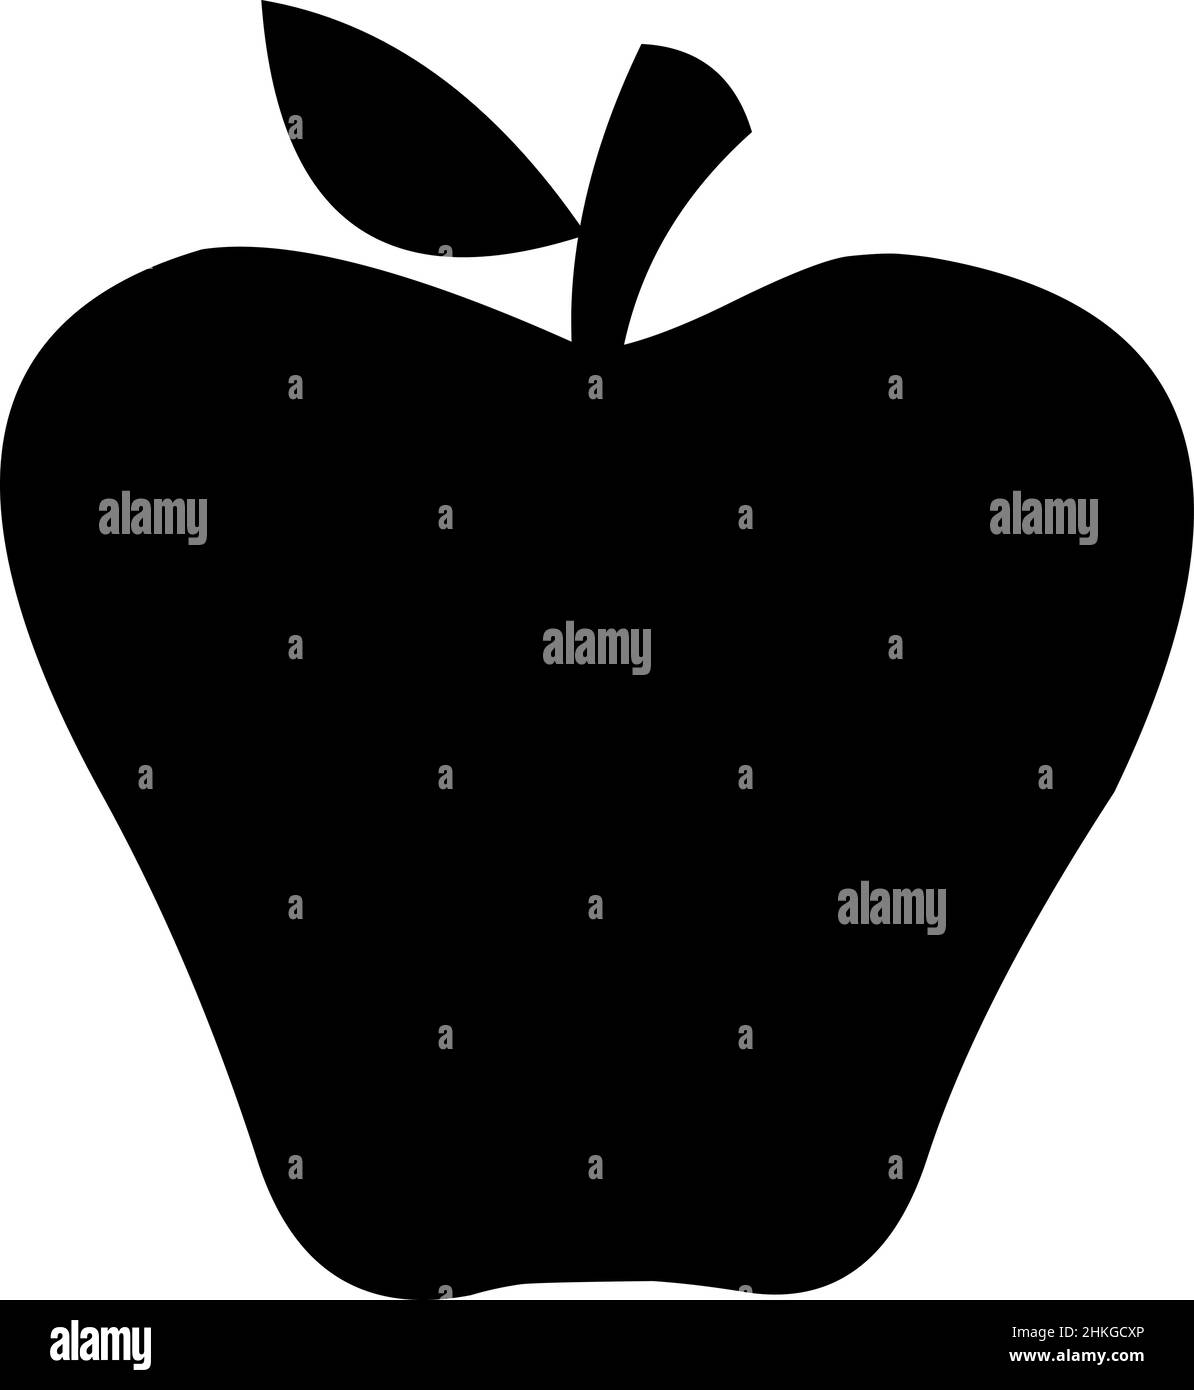 Vektor-Illustration der schwarzen Silhouette eines Apfels Stock Vektor